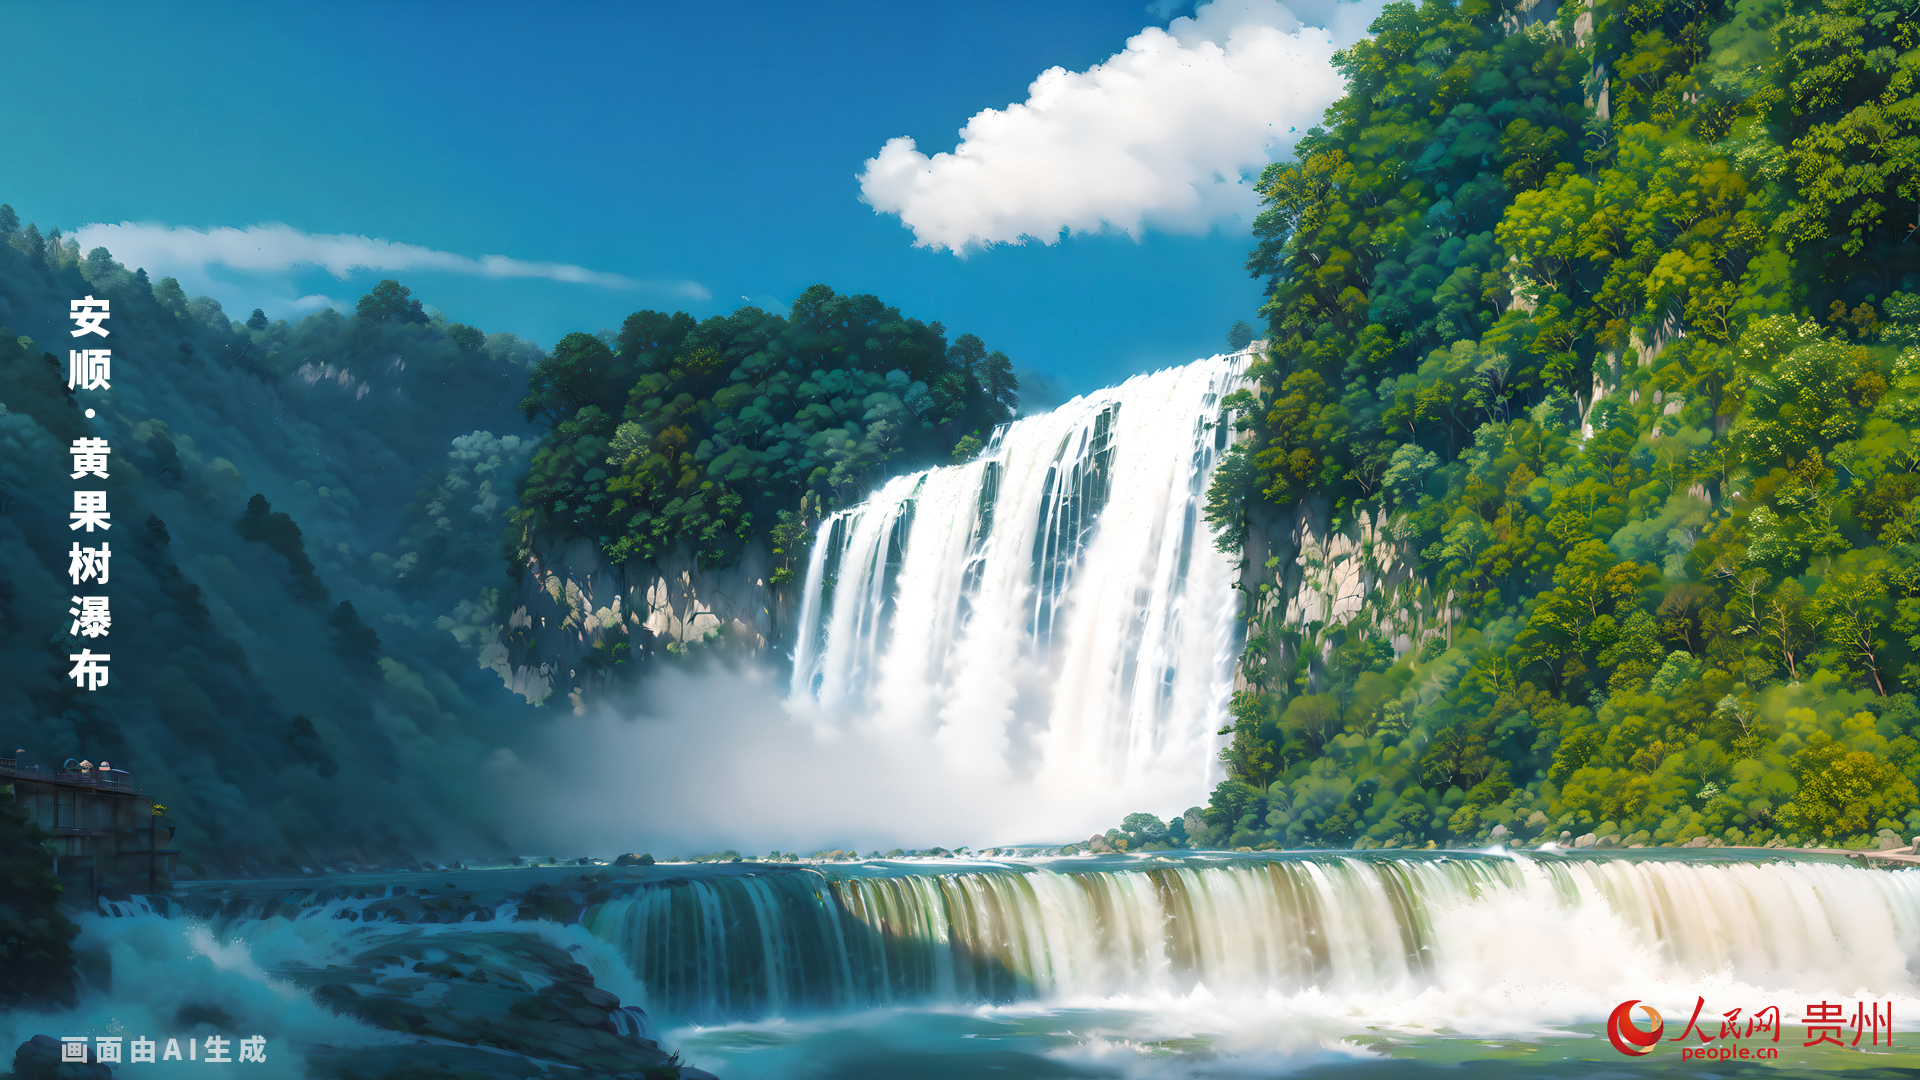 瀑布高度为77.8米，其中主瀑高67米；瀑布宽101米，其中主瀑顶宽83.3米。黄果树瀑布属喀斯特地貌中的侵蚀裂点型瀑布。